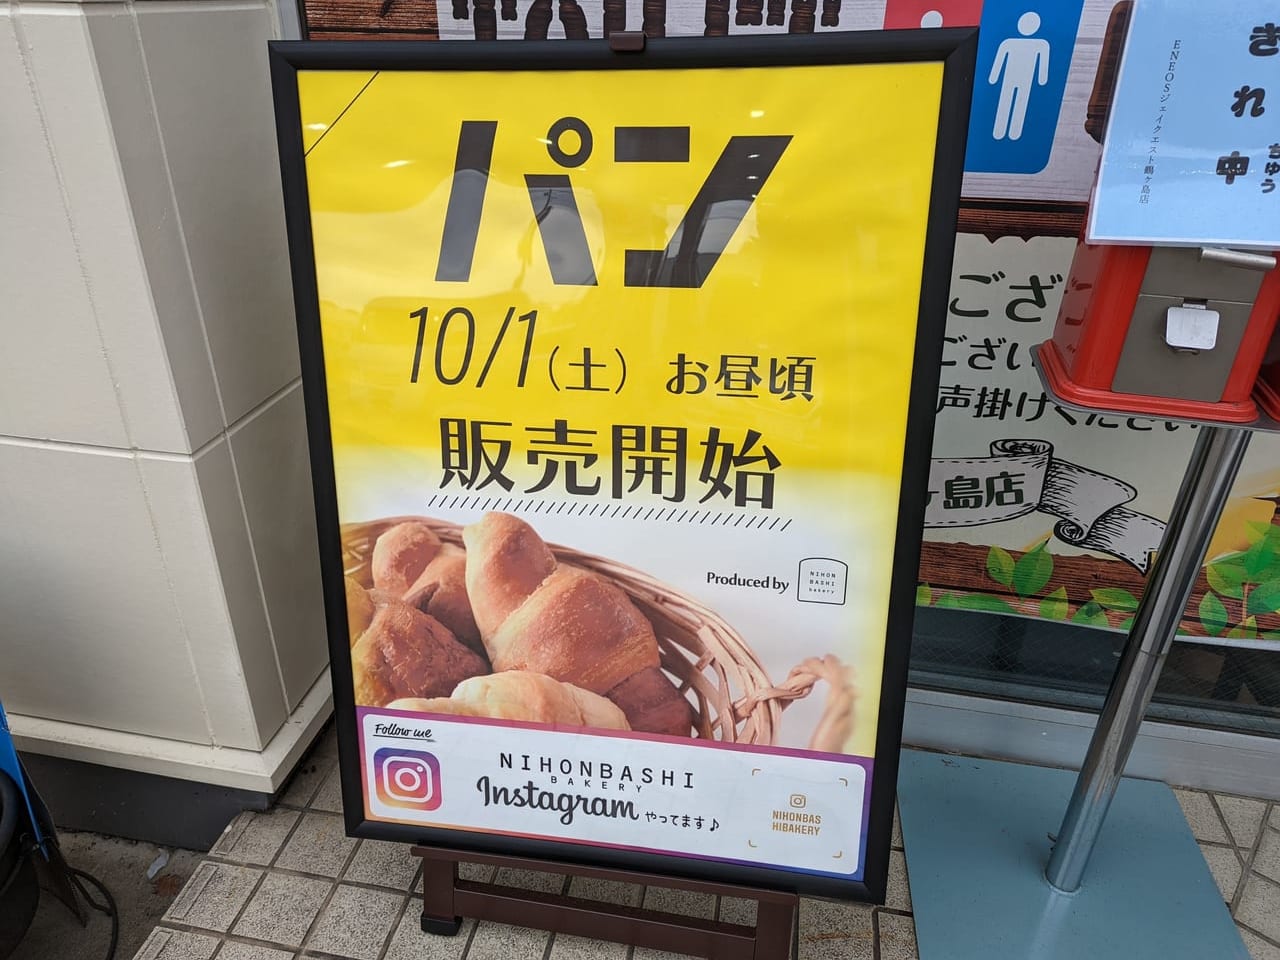 NIHONBASHIbakeryのパン販売開始